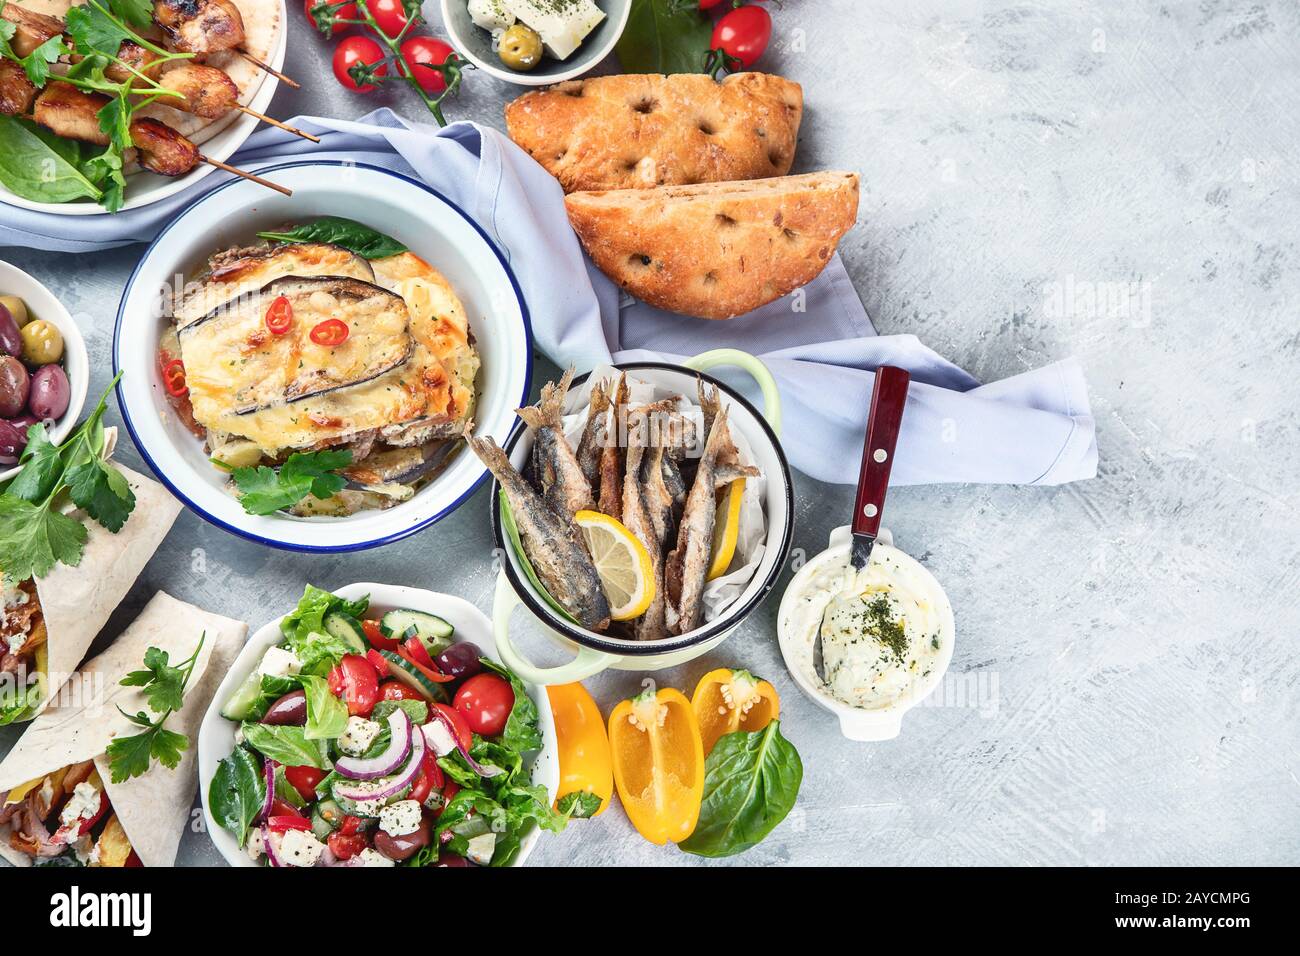 Cibo greco su sfondo grigio. Moussaka, gyros, souvlaki, pita, insalata, olive e verdure. Piatti tradizionali di diversi tipi di piatti greci. Vista dall'alto con Foto Stock